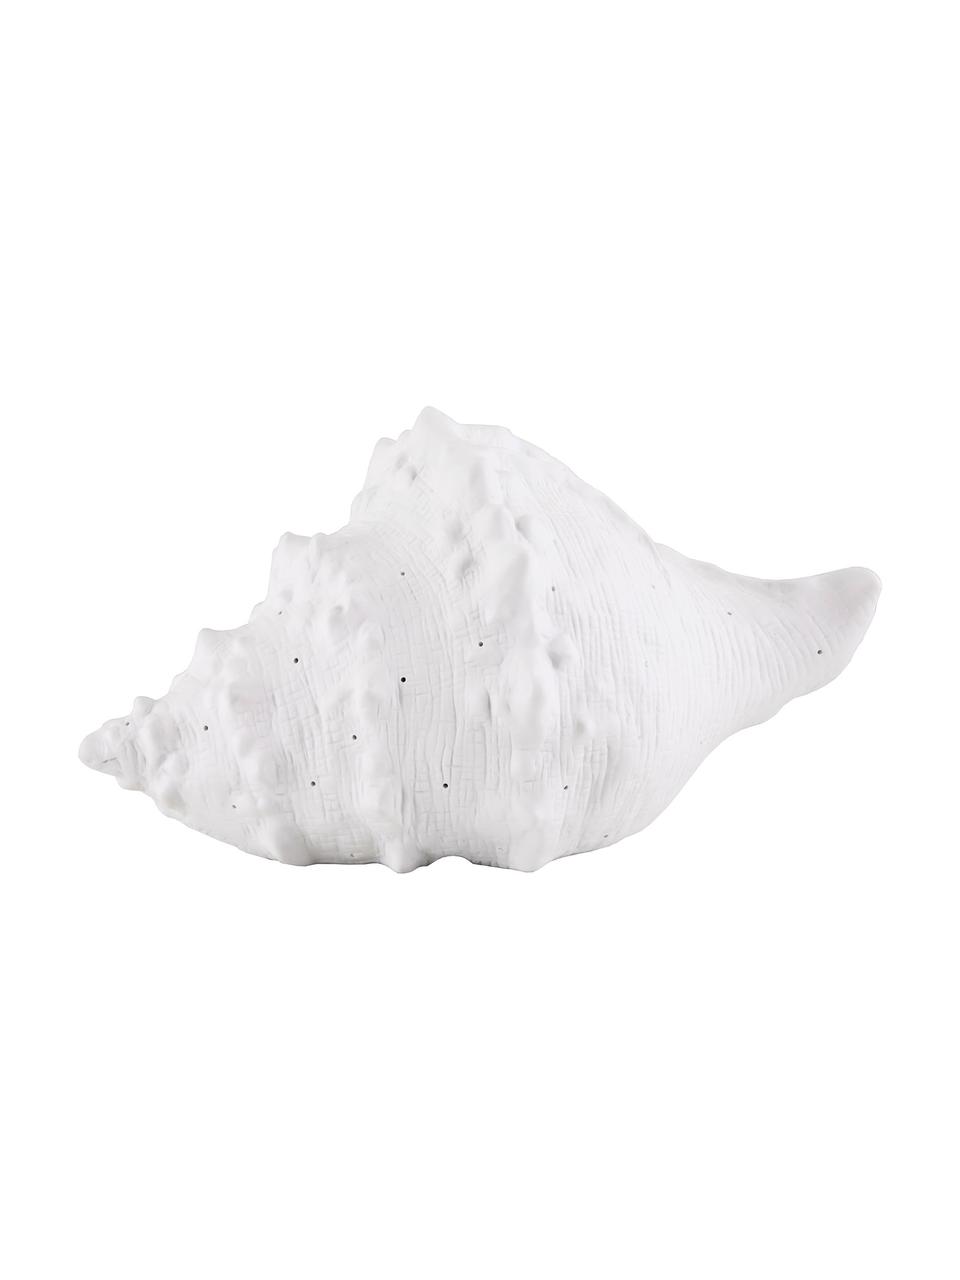 Petite lampe à poser en céramique Seashell, Blanc